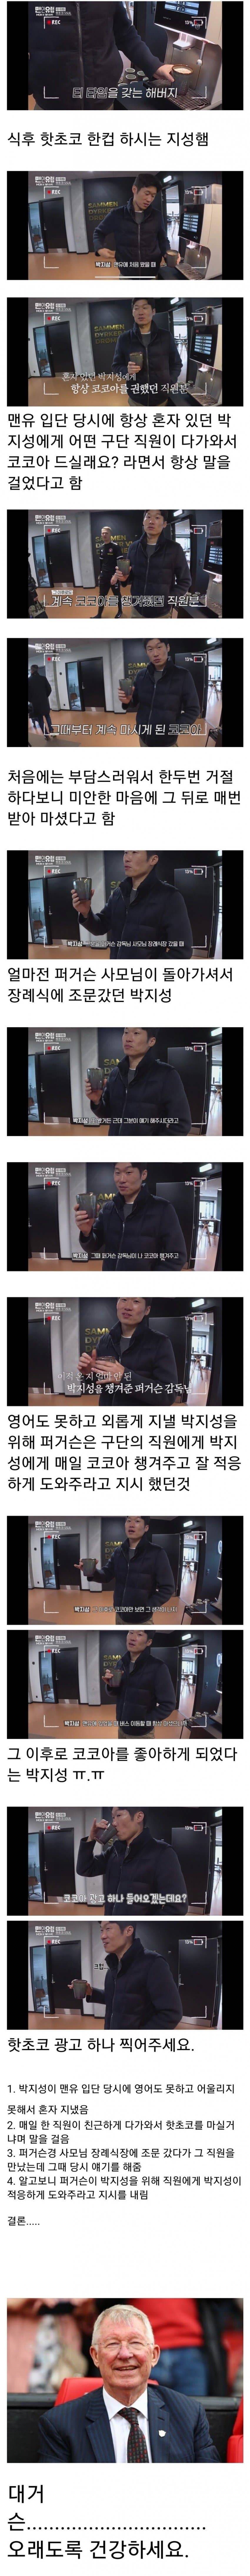 박지성이 코코아를 좋아하는 이유